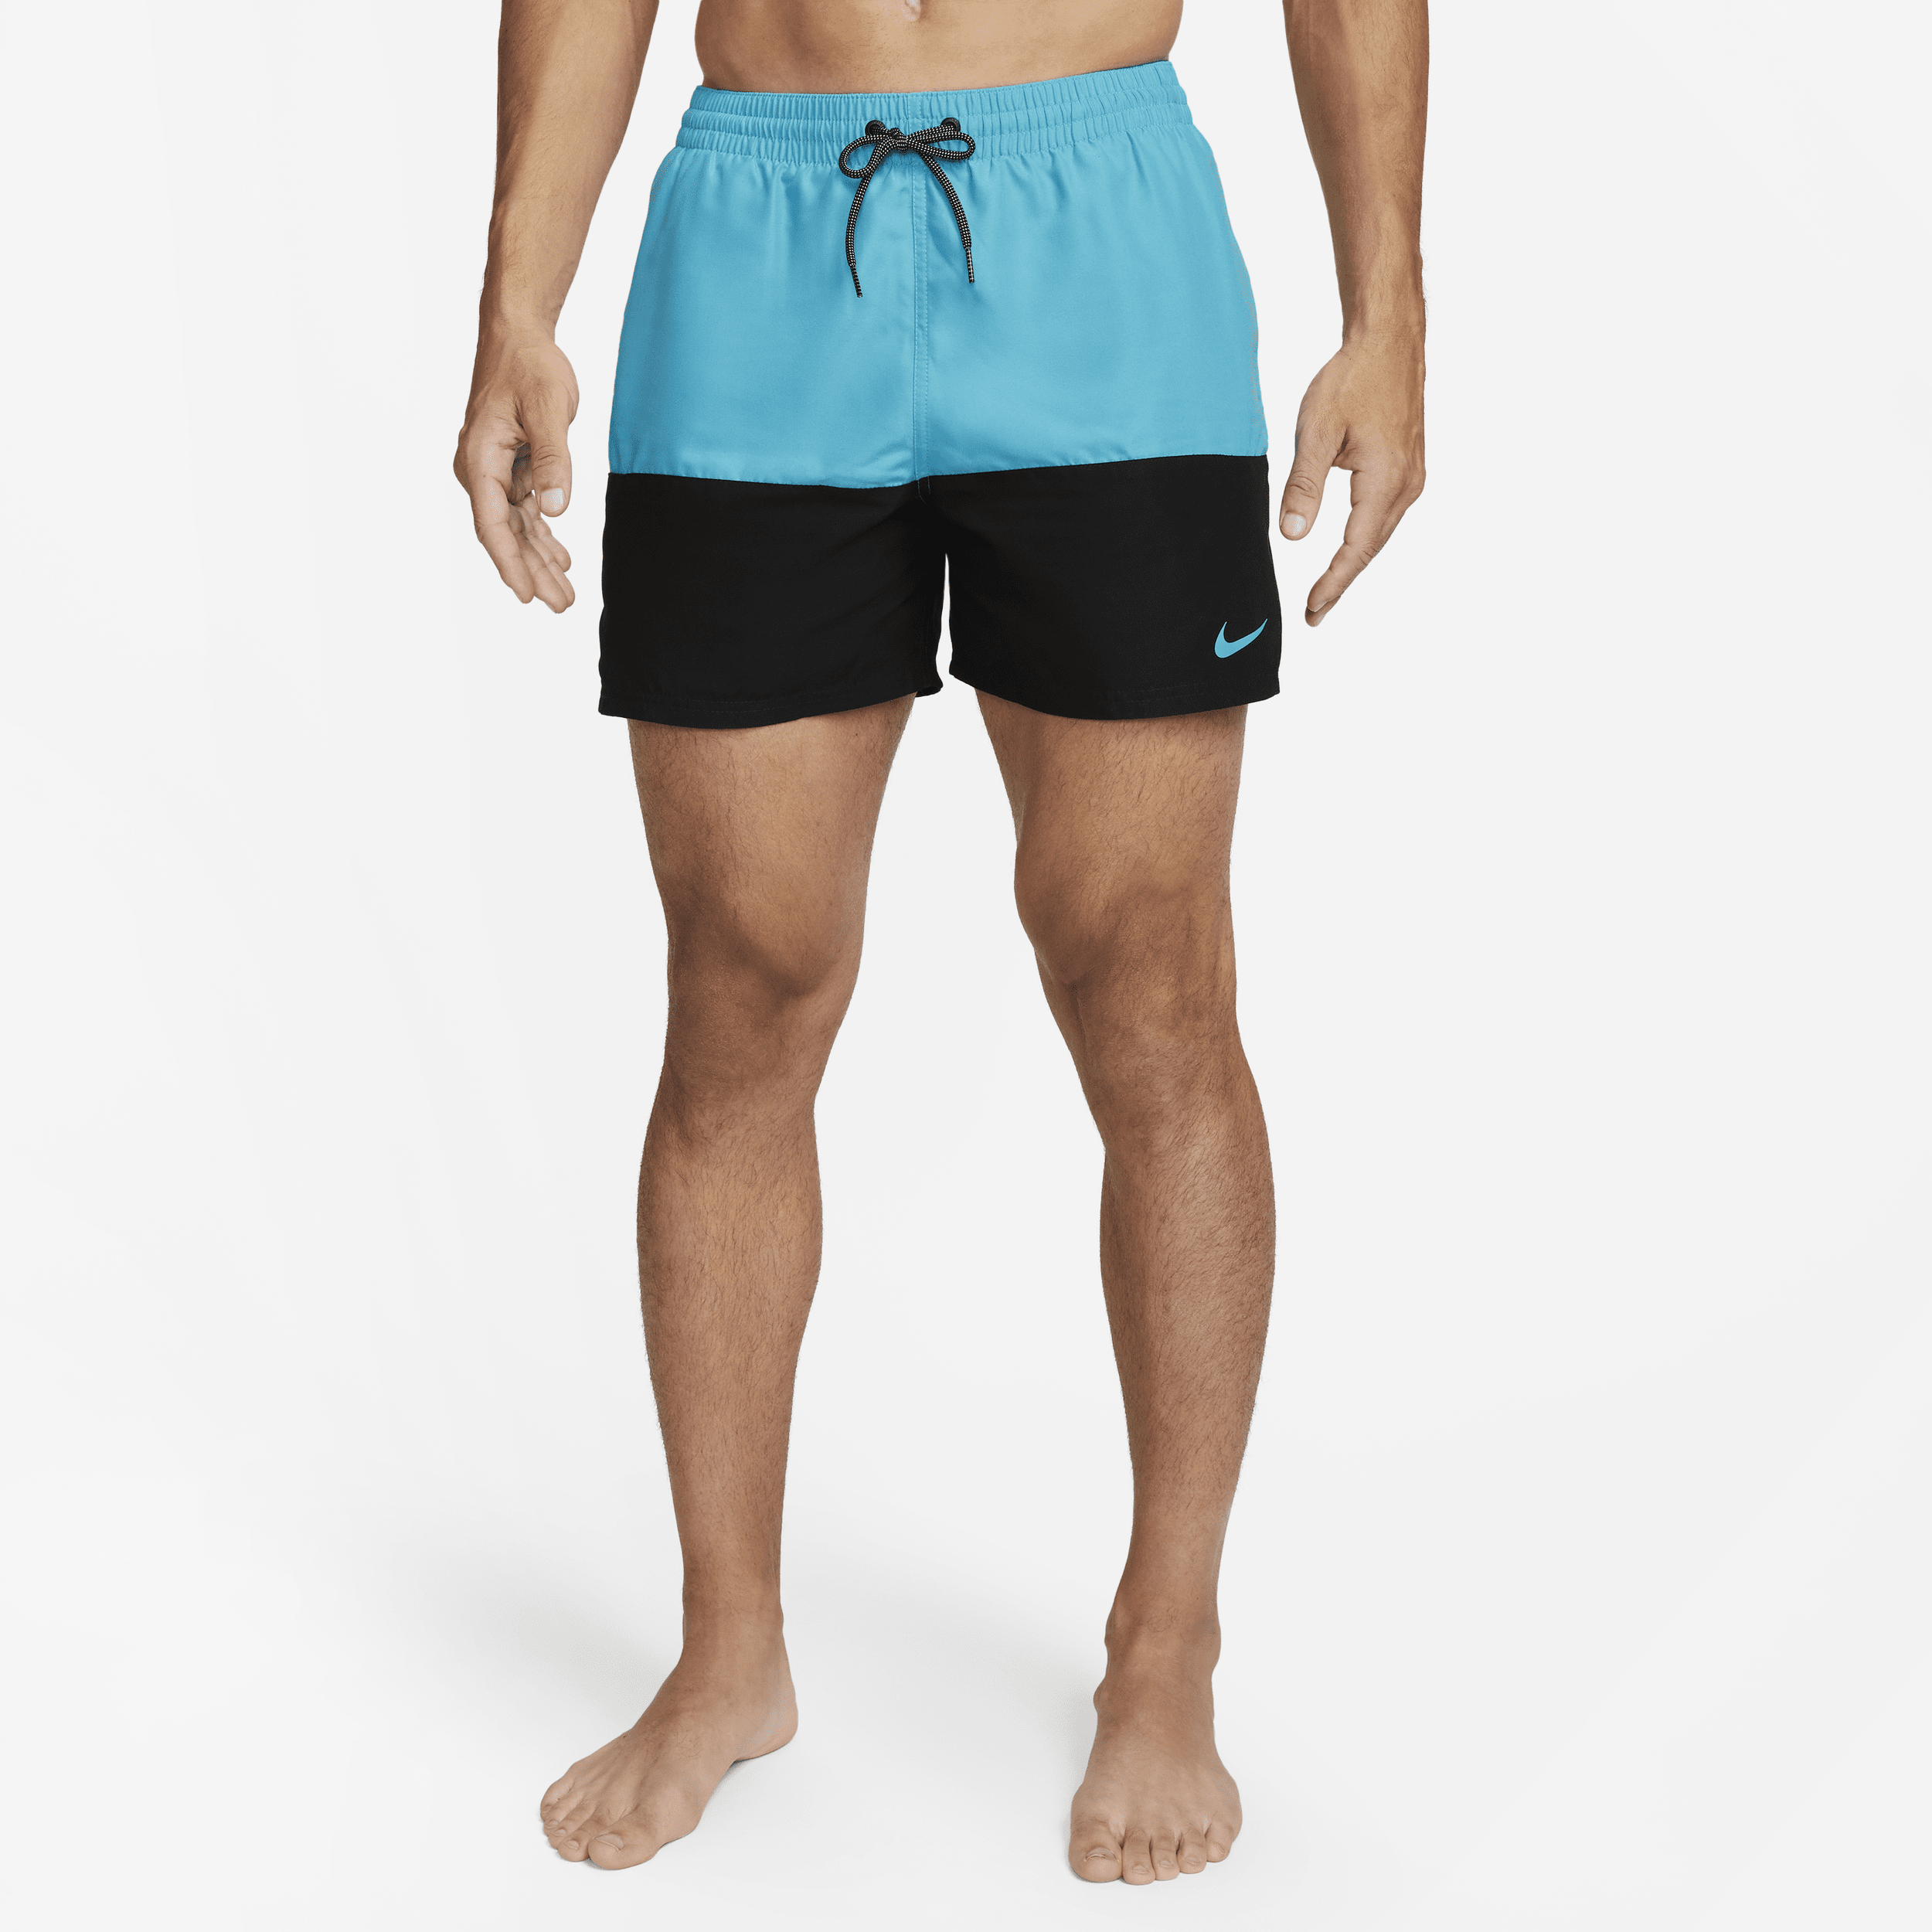 Nike Split-badebukser (13 cm) til mænd - blå